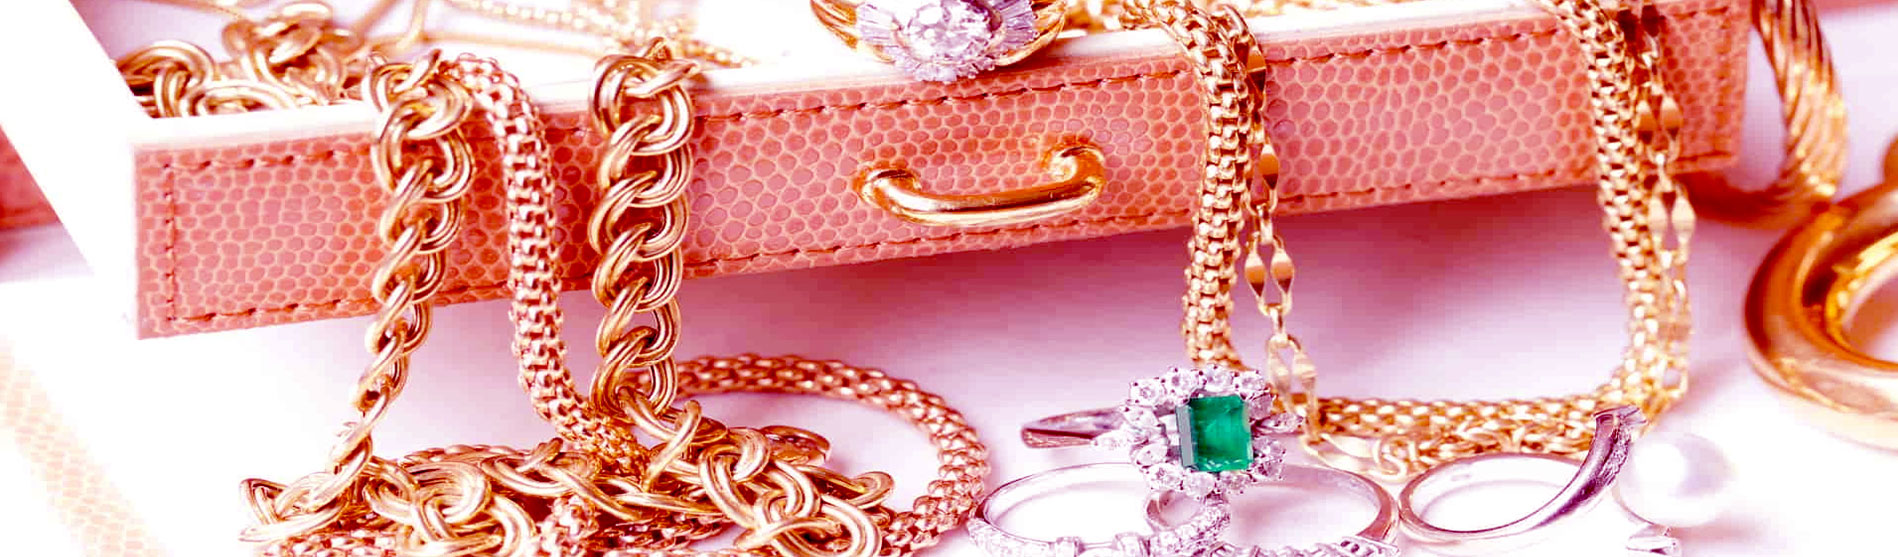 Trouver un site d'e-commerce qui propose des bijoux en or ou fantaisies